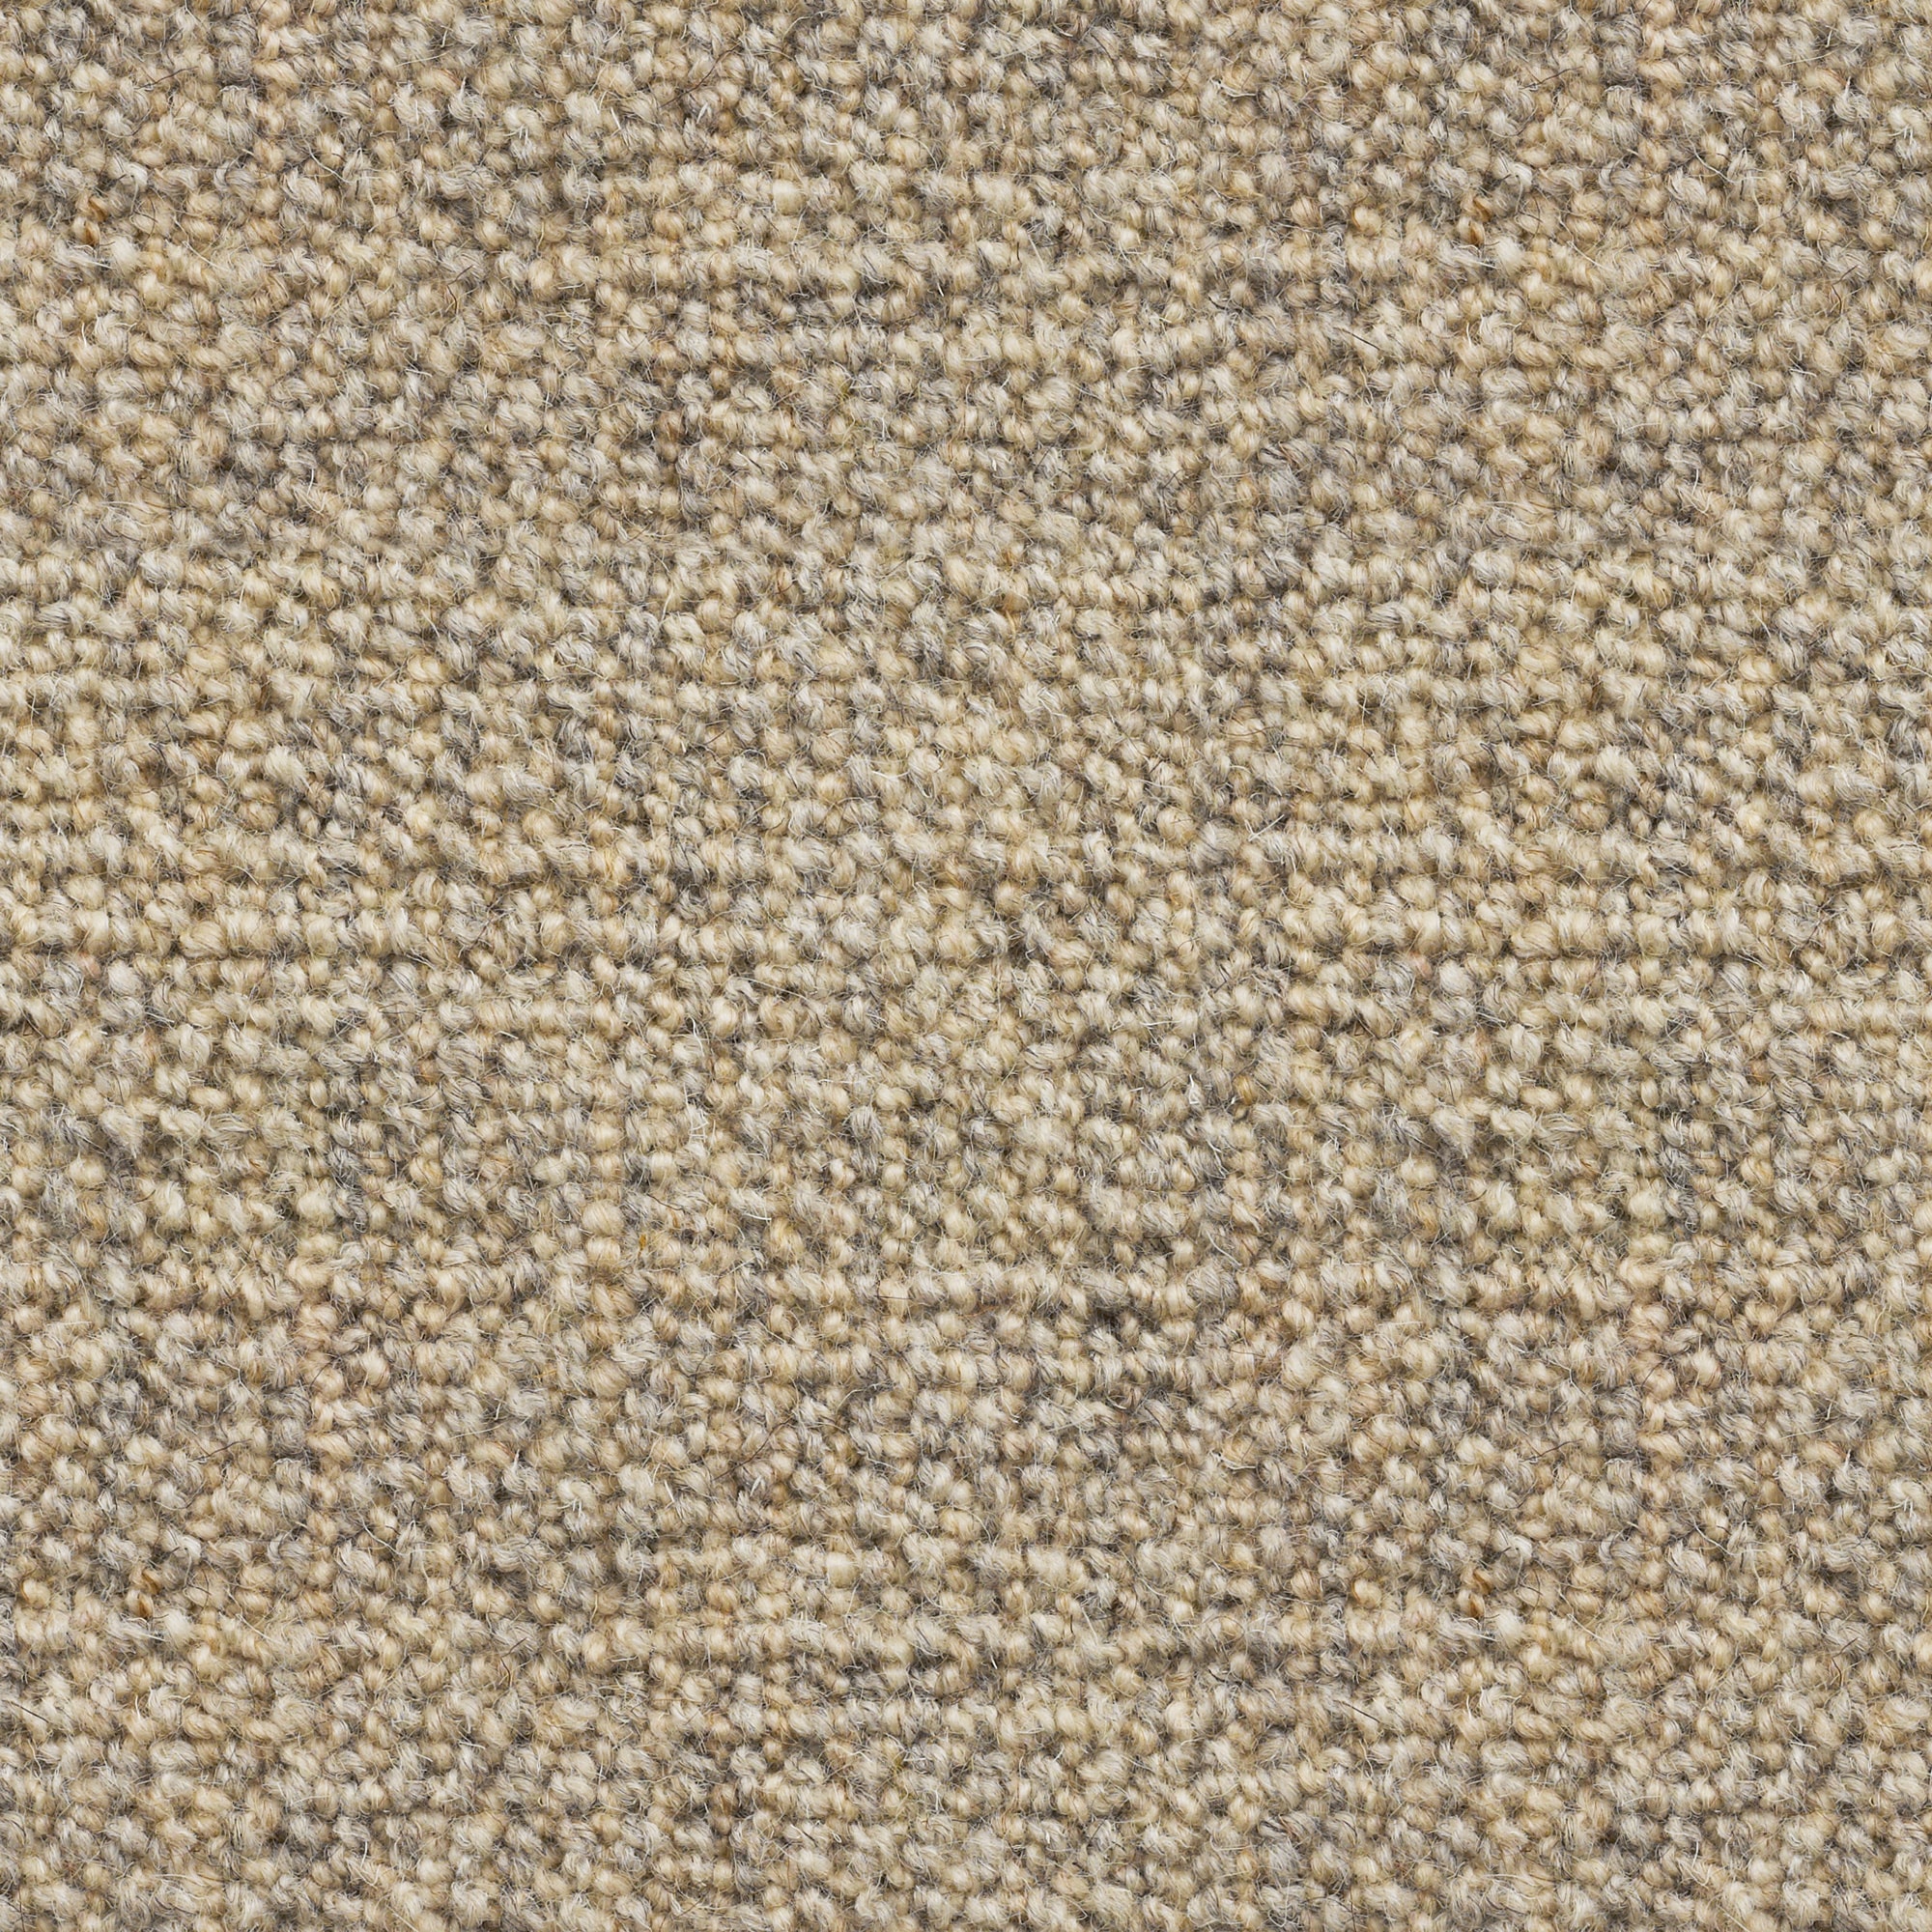 Rustic Croft: Crushed Hessian - 100% Wool Carpet